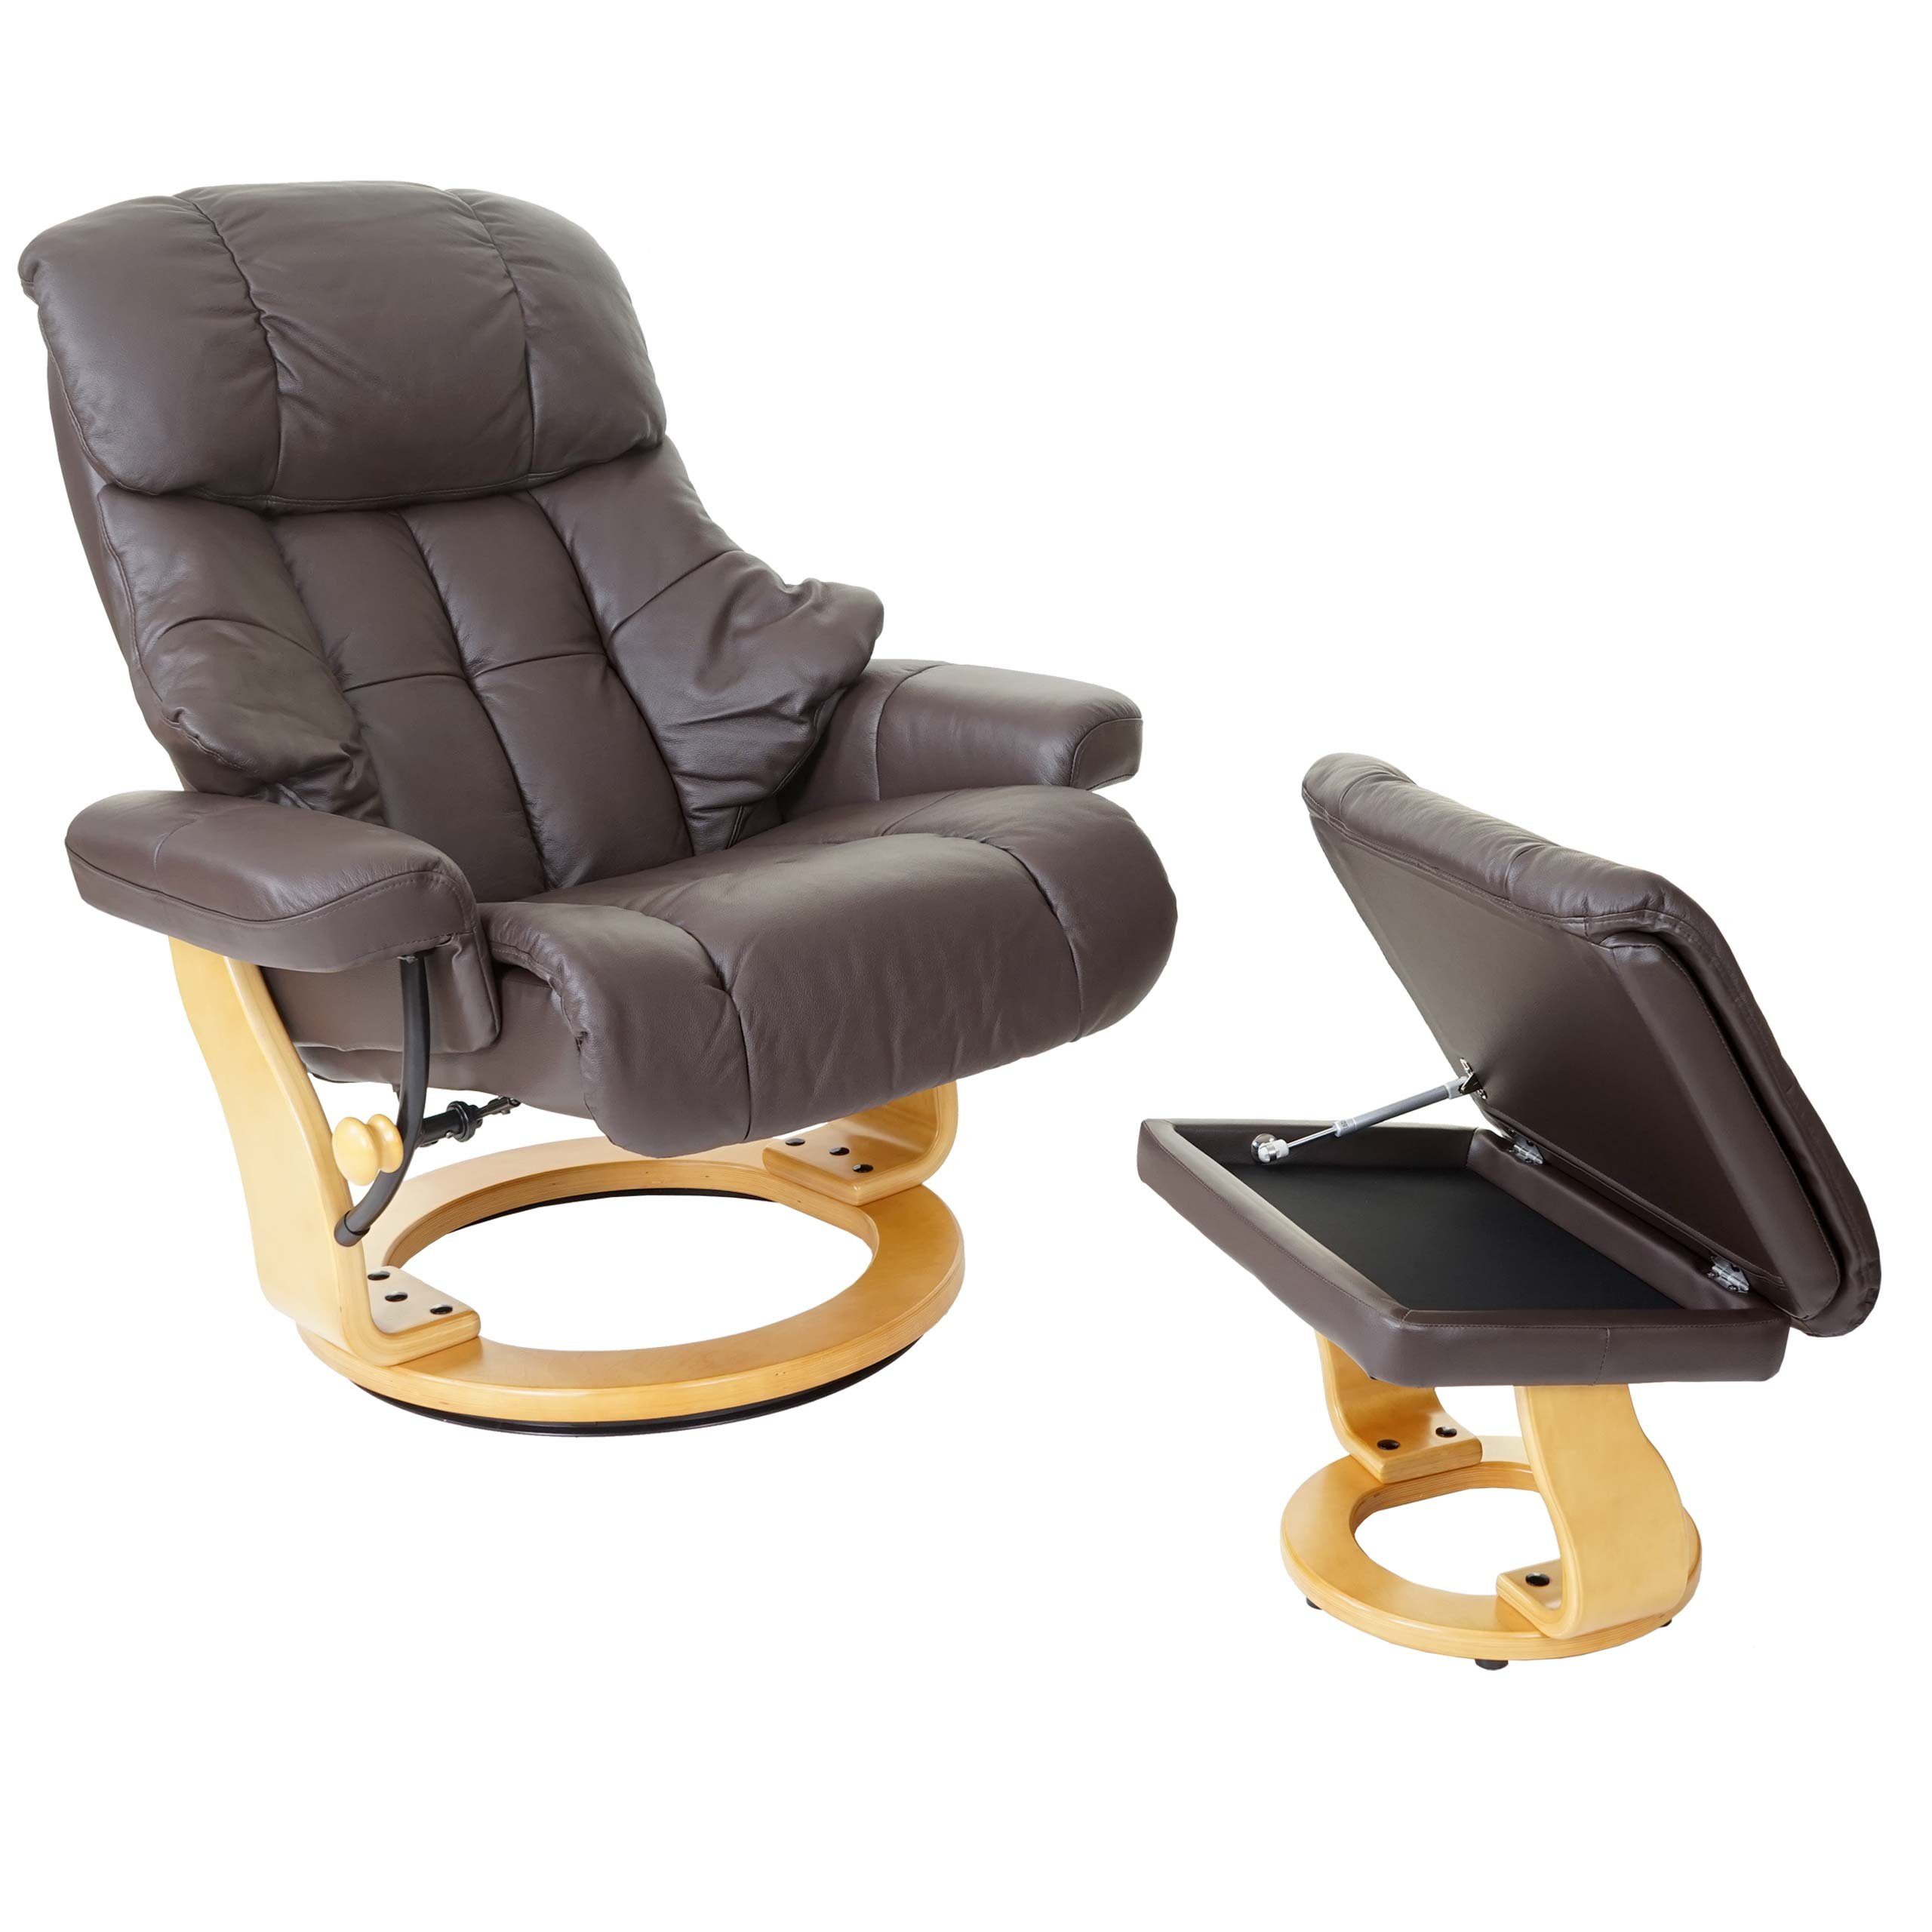 MCA furniture Relaxsessel Windsor XXL, Extradicke Polsterung, inklusive gepolstertem Fußhocker mit Staufach braun, naturbraun